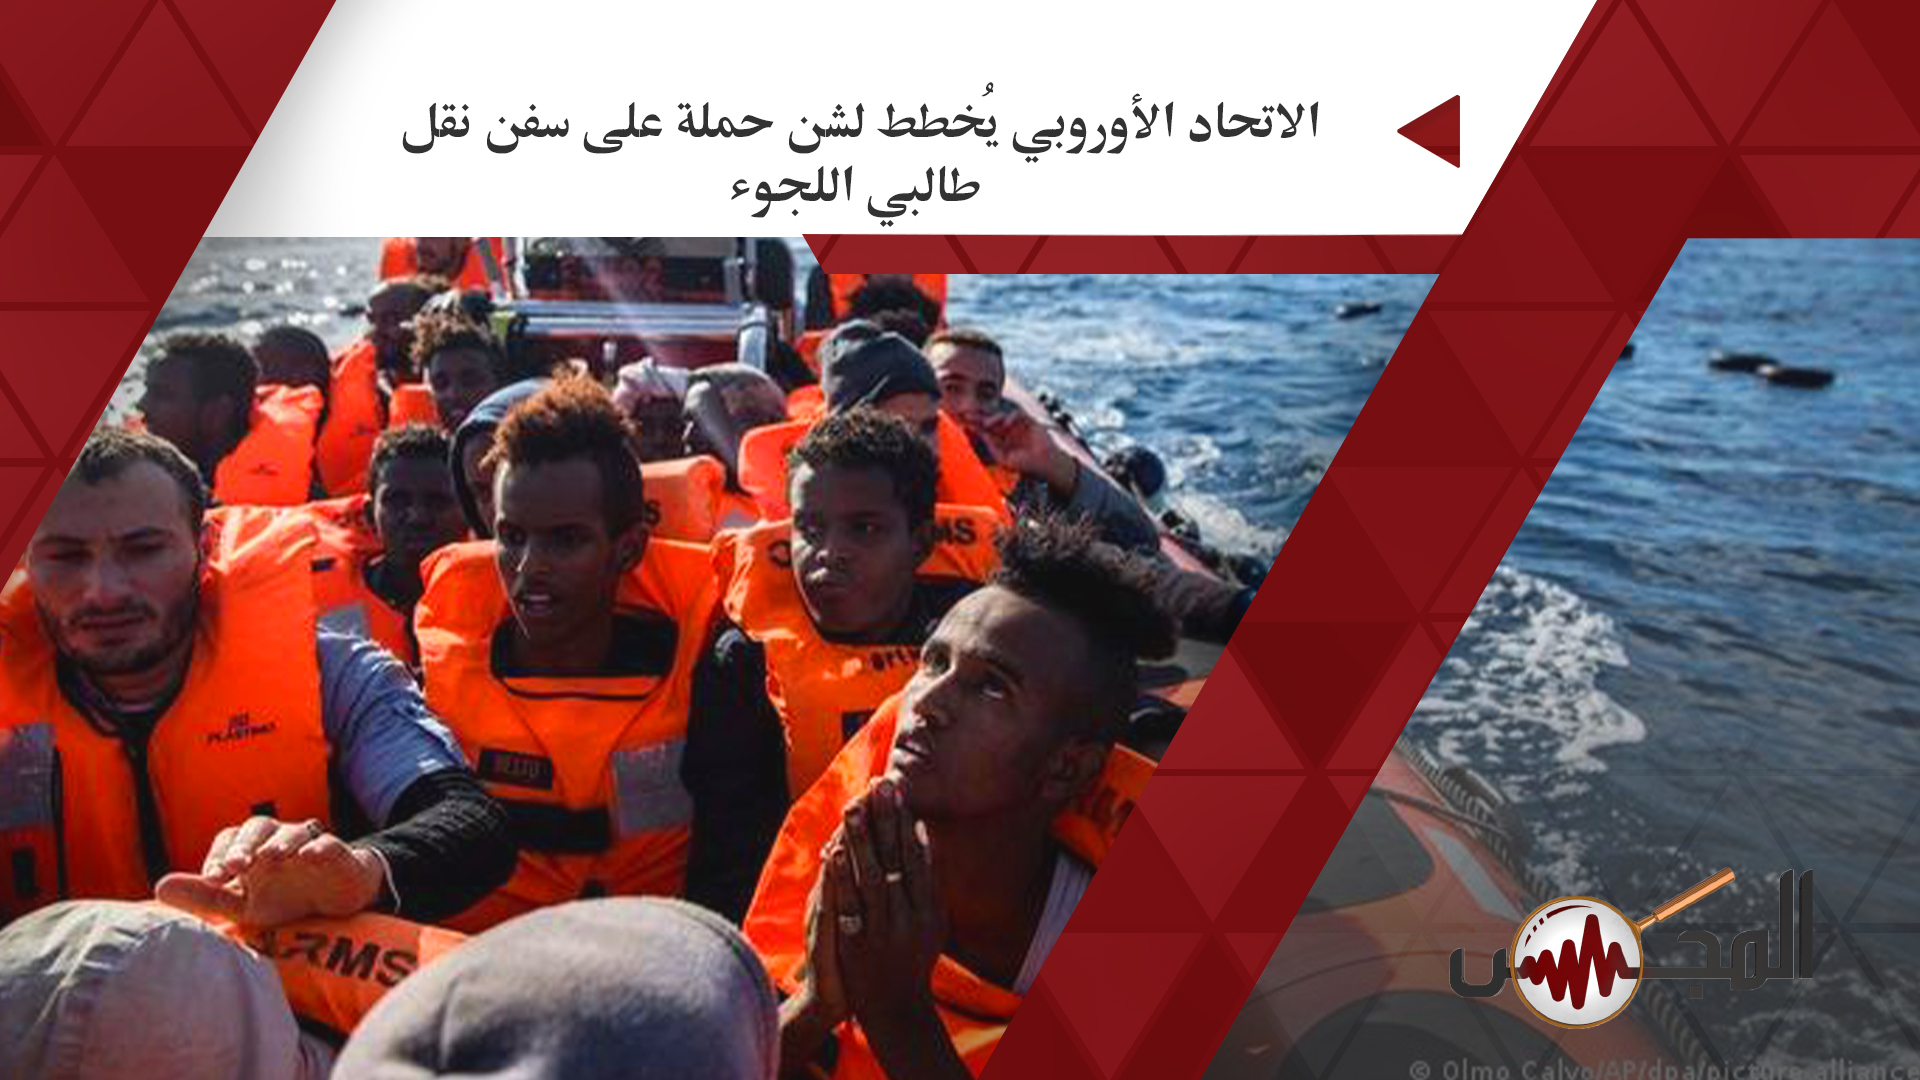  الاتحاد الأوروبي يُخطط لشن حملة على سفن نقل طالبي اللجوء